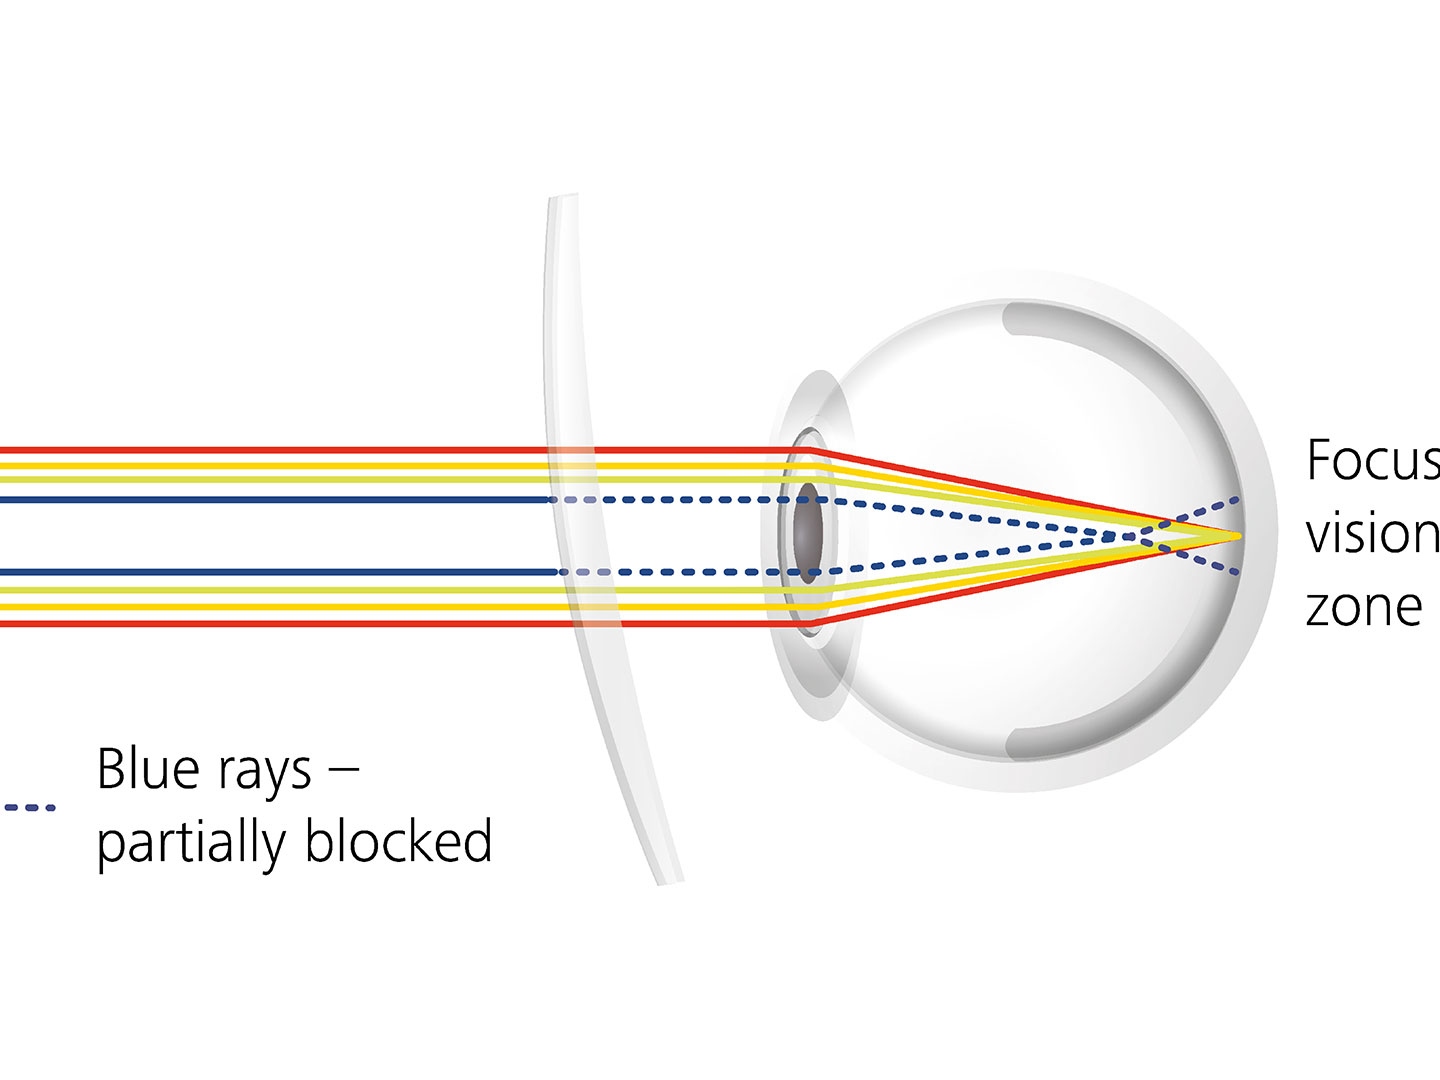 Visualisering över hur glasytbeläggningar kan reducera bländning geno att delvis blockera blåstrålar 